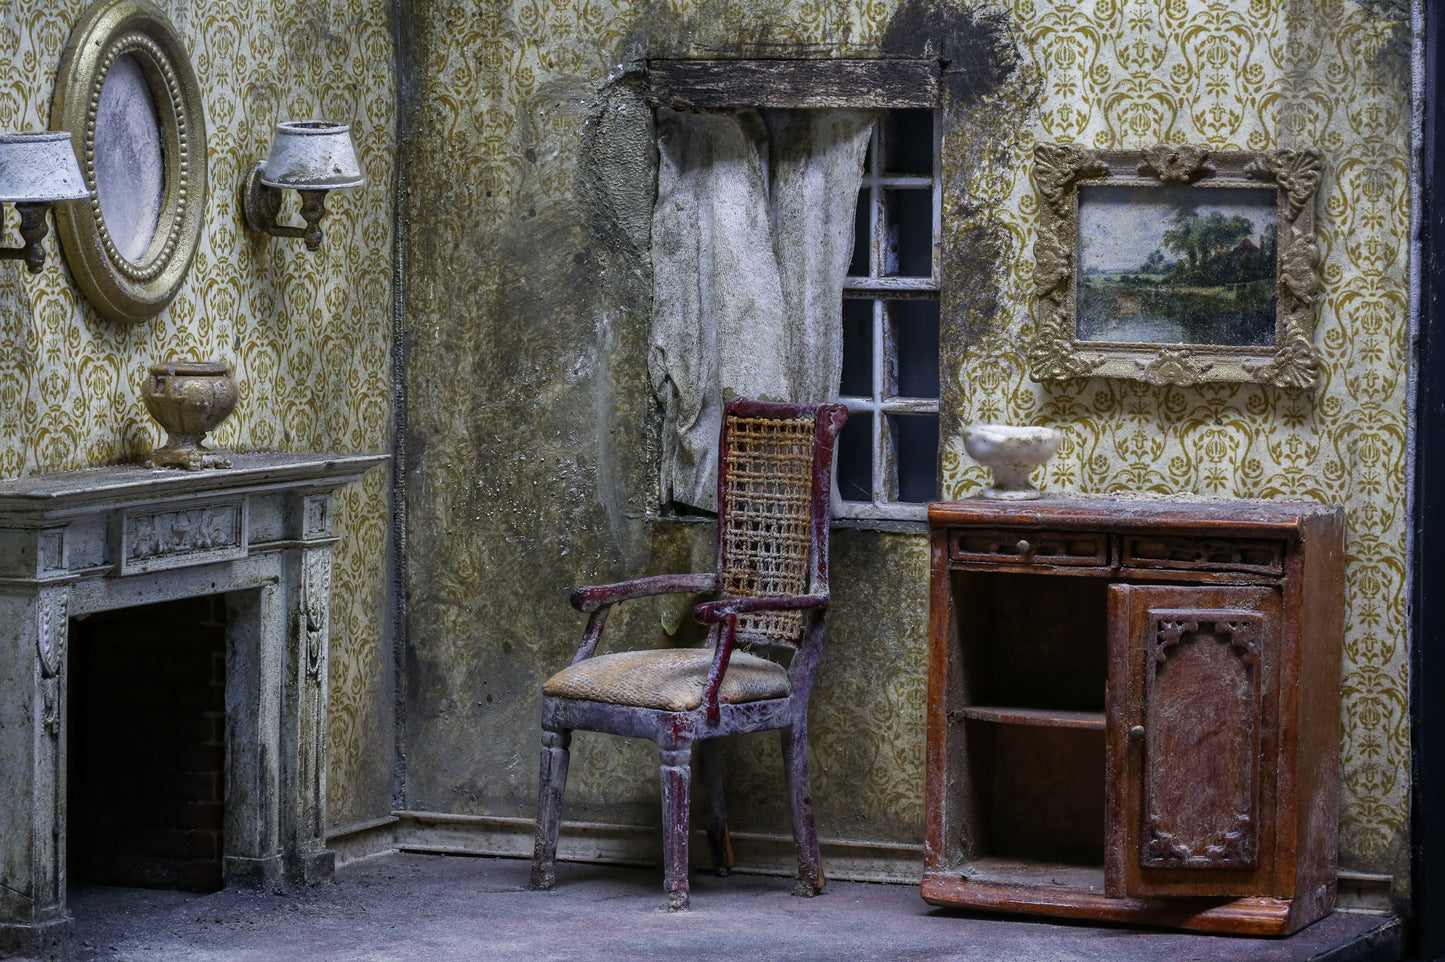 Andreas Rousonelis "Abandoned Living Room"